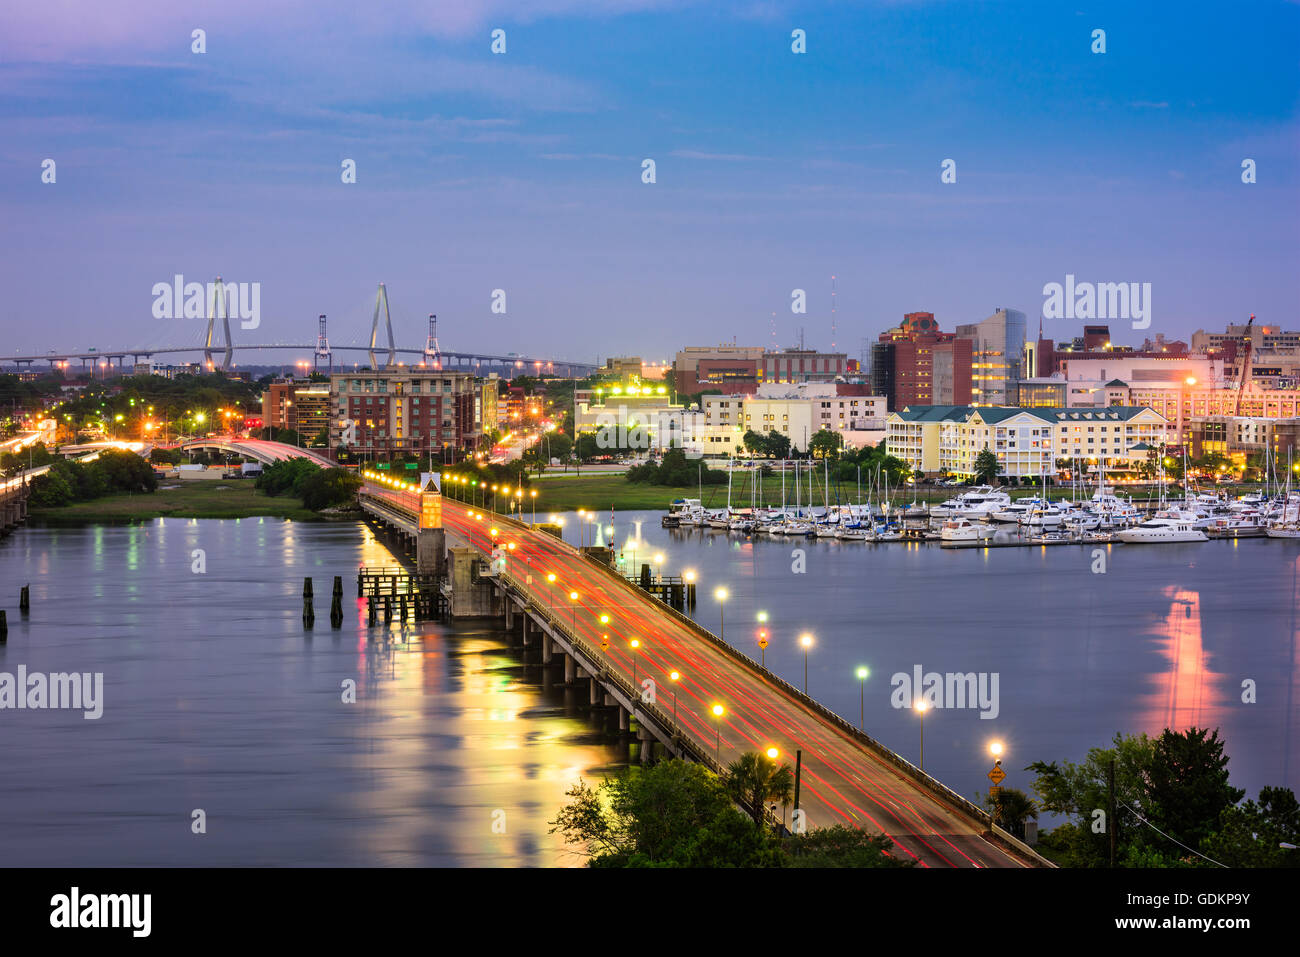 Charleston, Caroline du Sud, USA Skyline sur la rivière Ashley. Banque D'Images